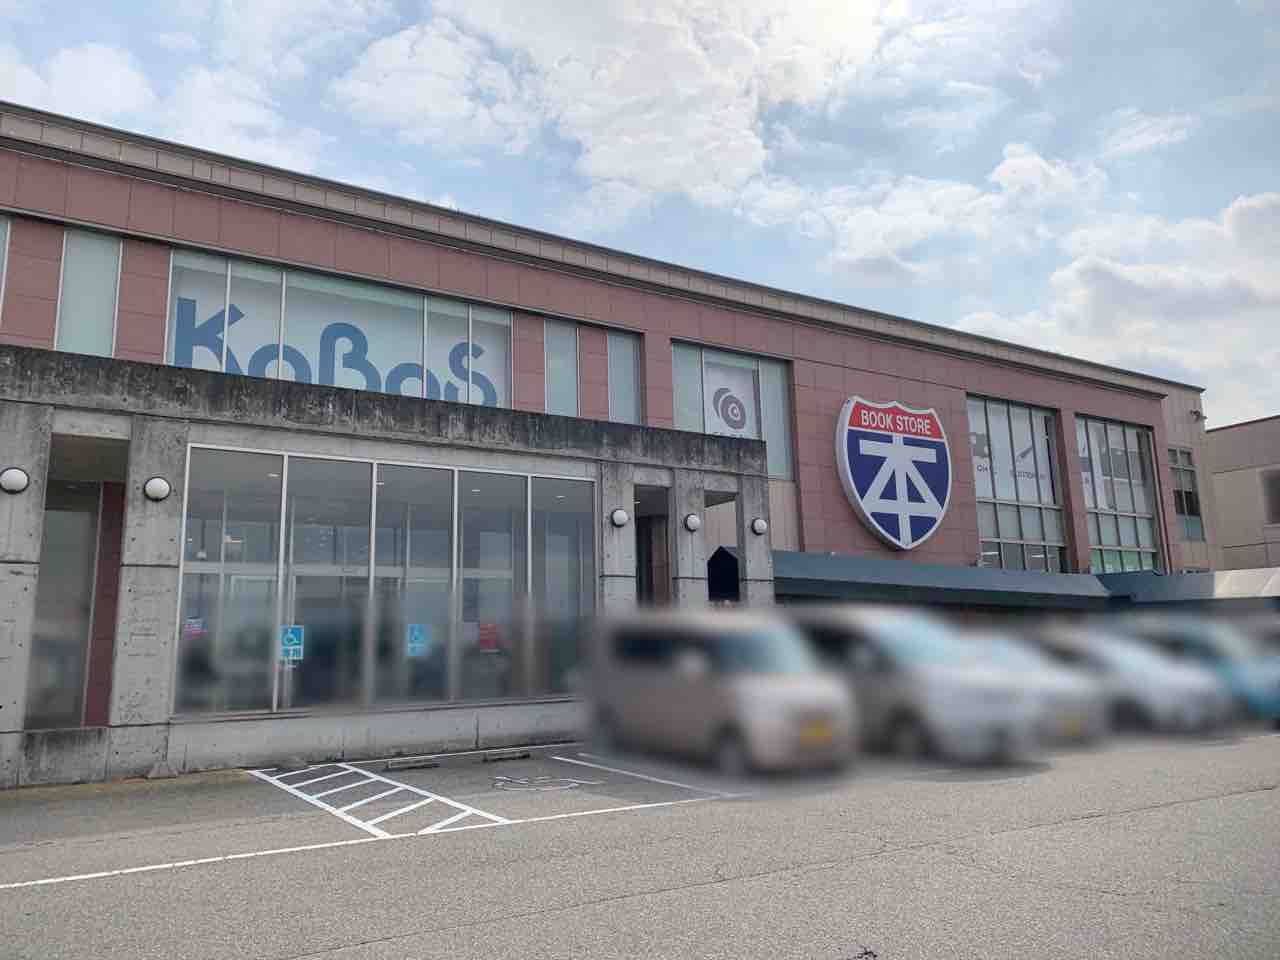 大桑にある Super Kabos大桑店 カボス が閉店するらしい 金沢デイズ 石川県金沢市の地域情報サイト